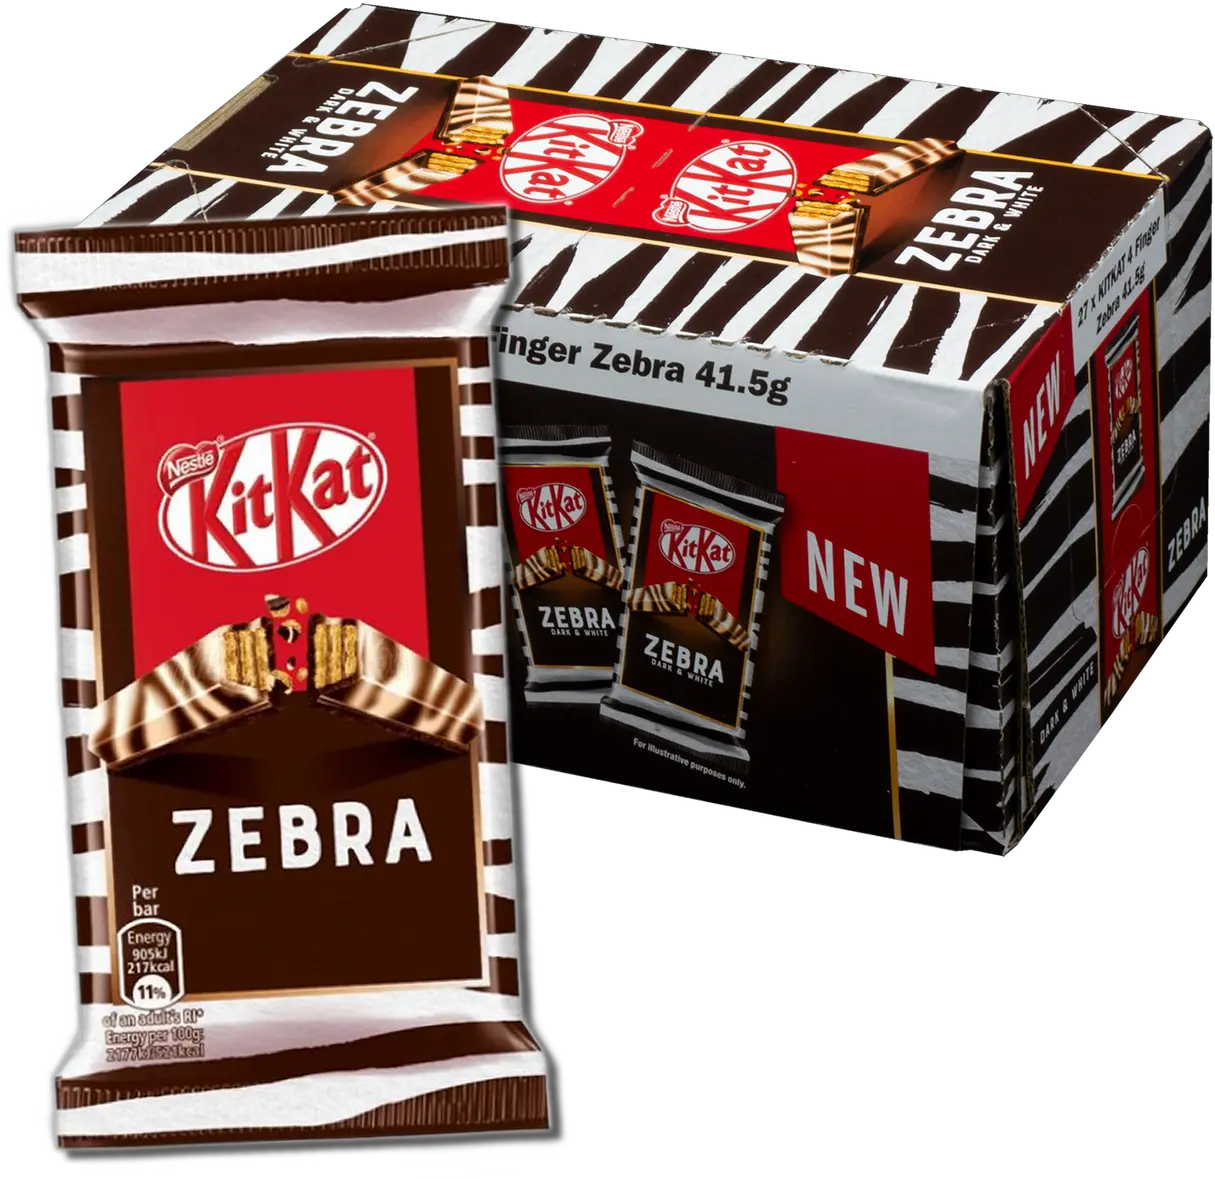 Nestle Kit Kat 4 Finger Zebra Dark U0026 White Chocolate Bar 415g Case Of 27 Png Icon Pack